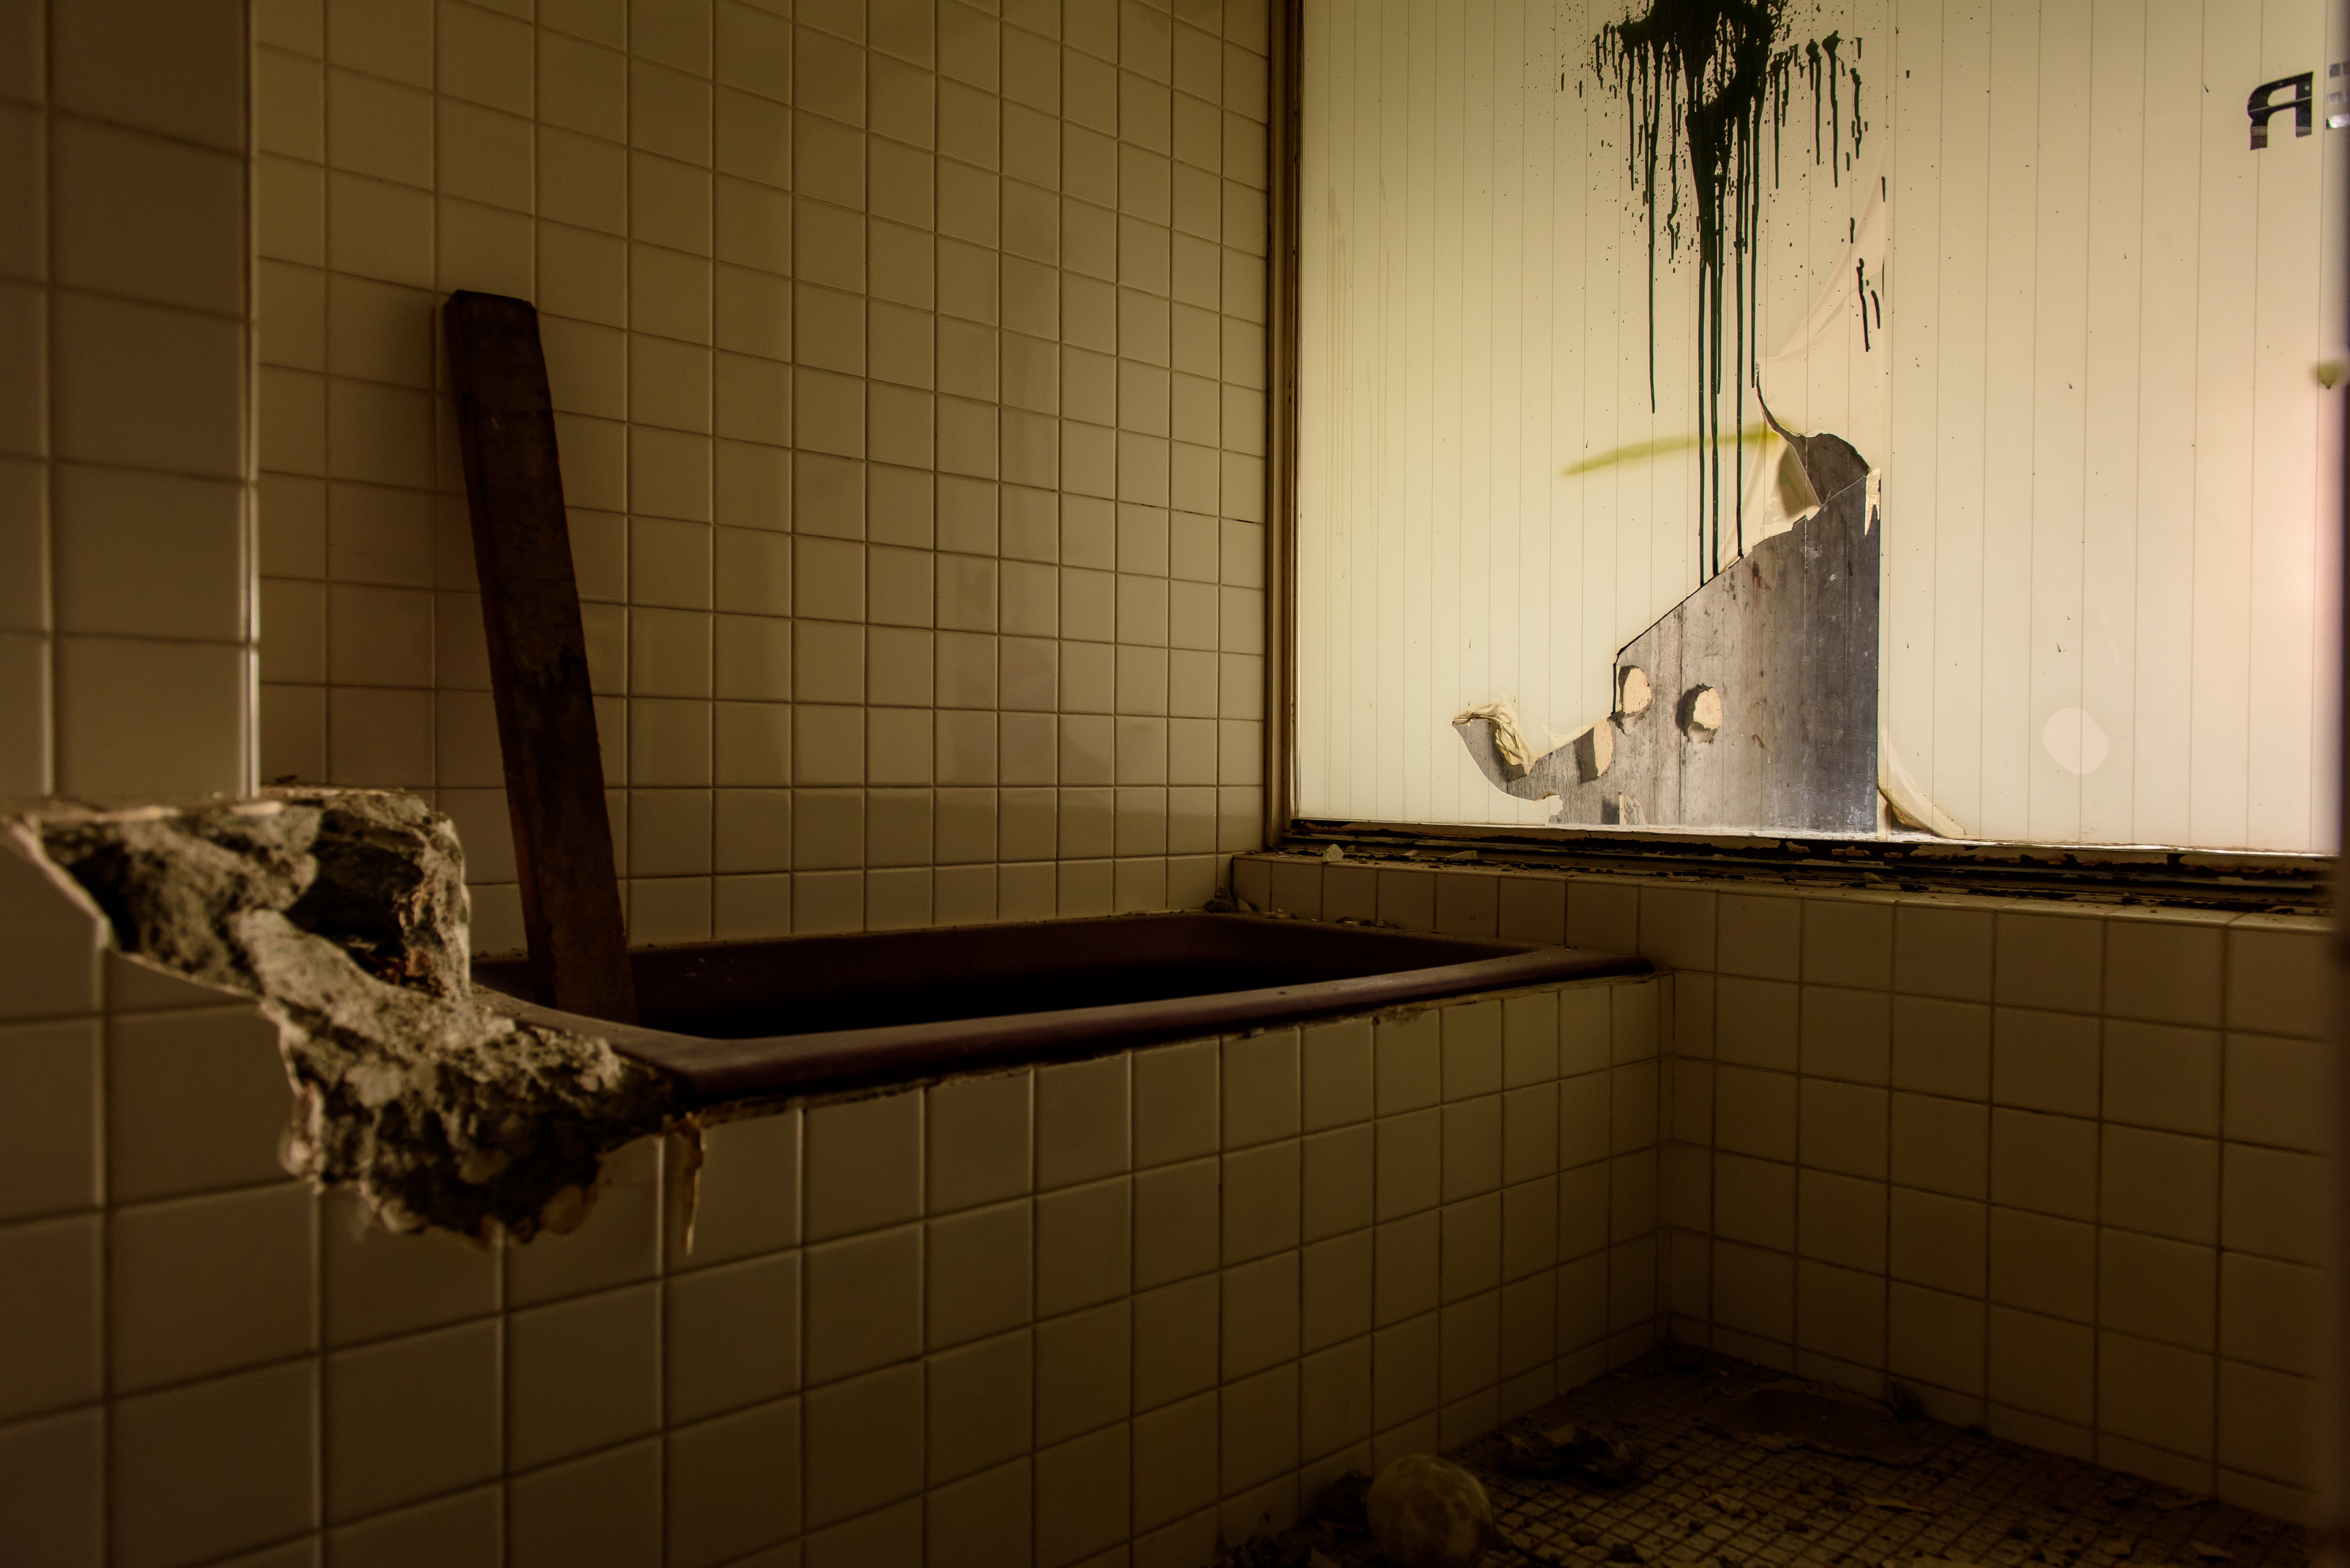 ホテル廃墟のお風呂場の写真を無料ダウンロード フリー素材 ぱくたそ